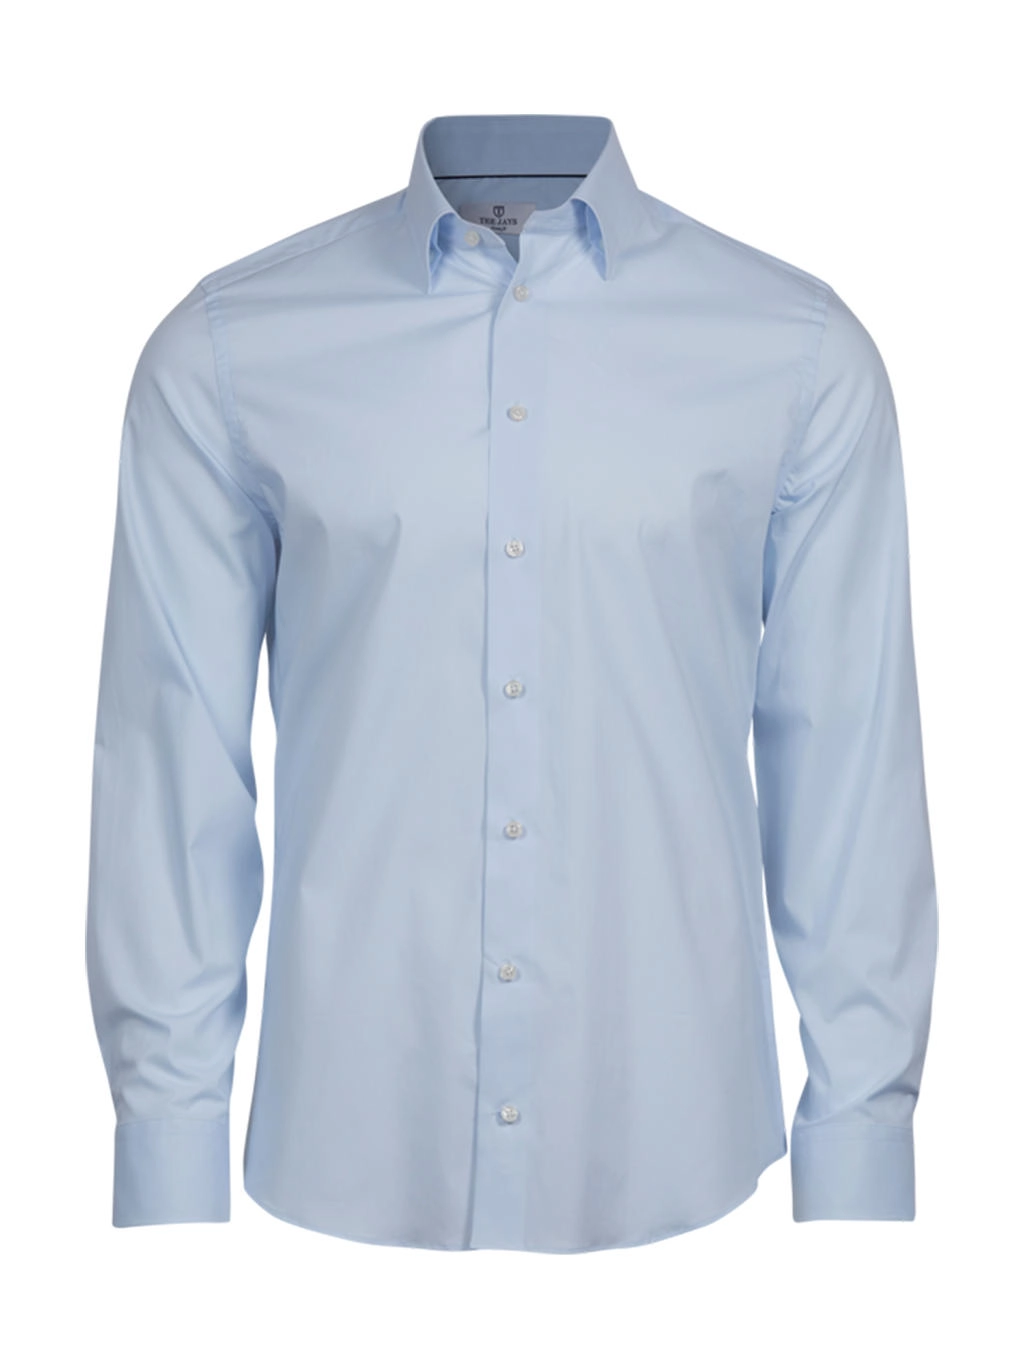 Stretch Luxury Shirt zum Besticken und Bedrucken in der Farbe Light Blue mit Ihren Logo, Schriftzug oder Motiv.